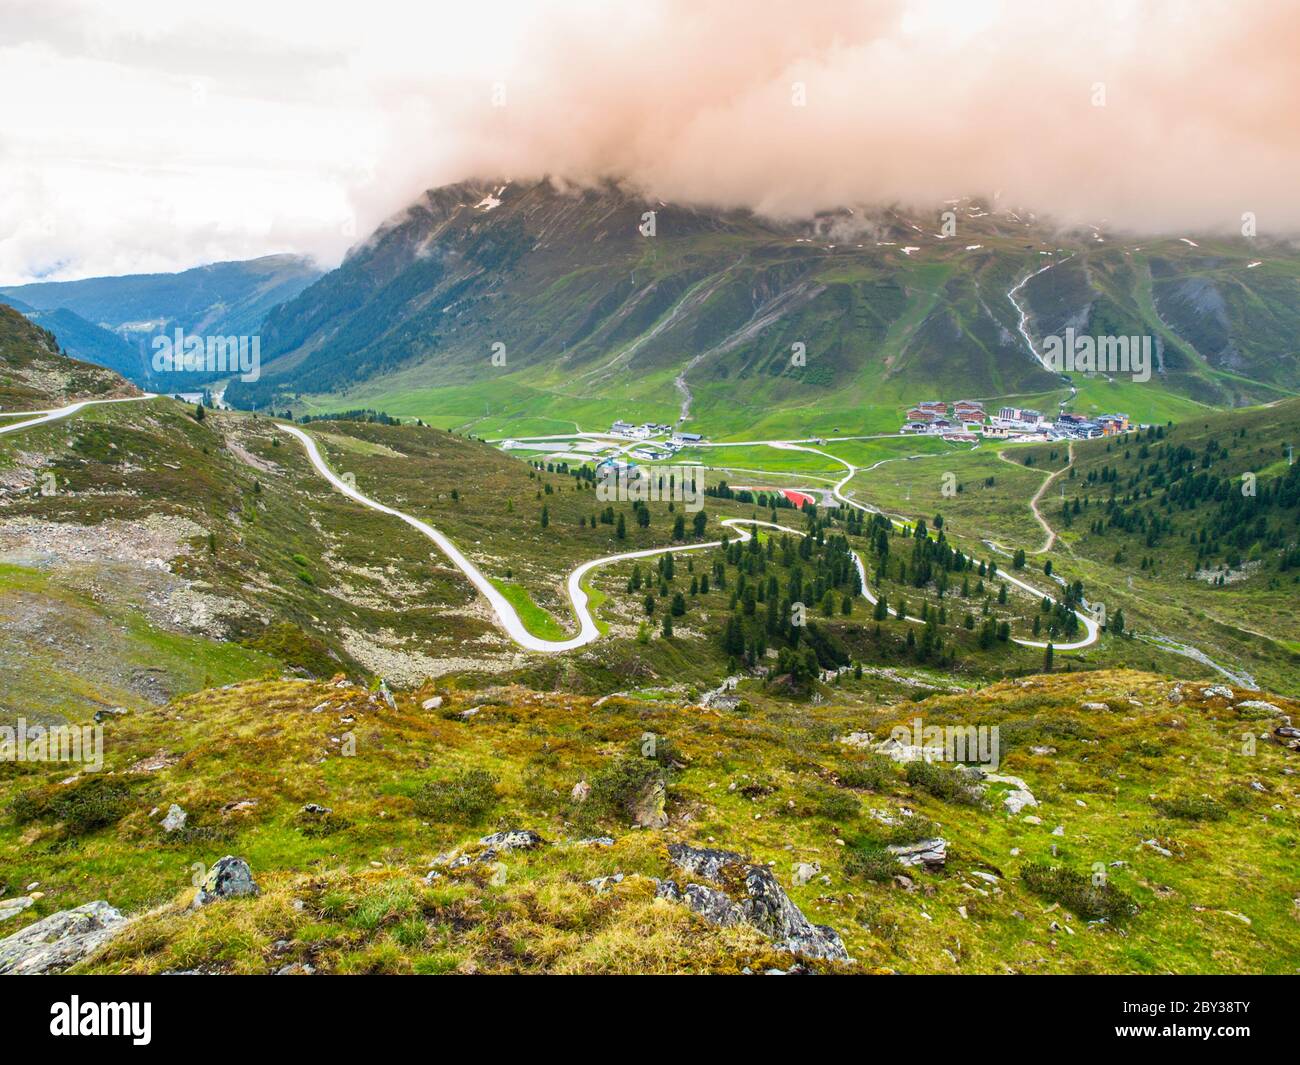 Alpine ski resort Kuthai in summer season after rainy day, Austria Stock Photo